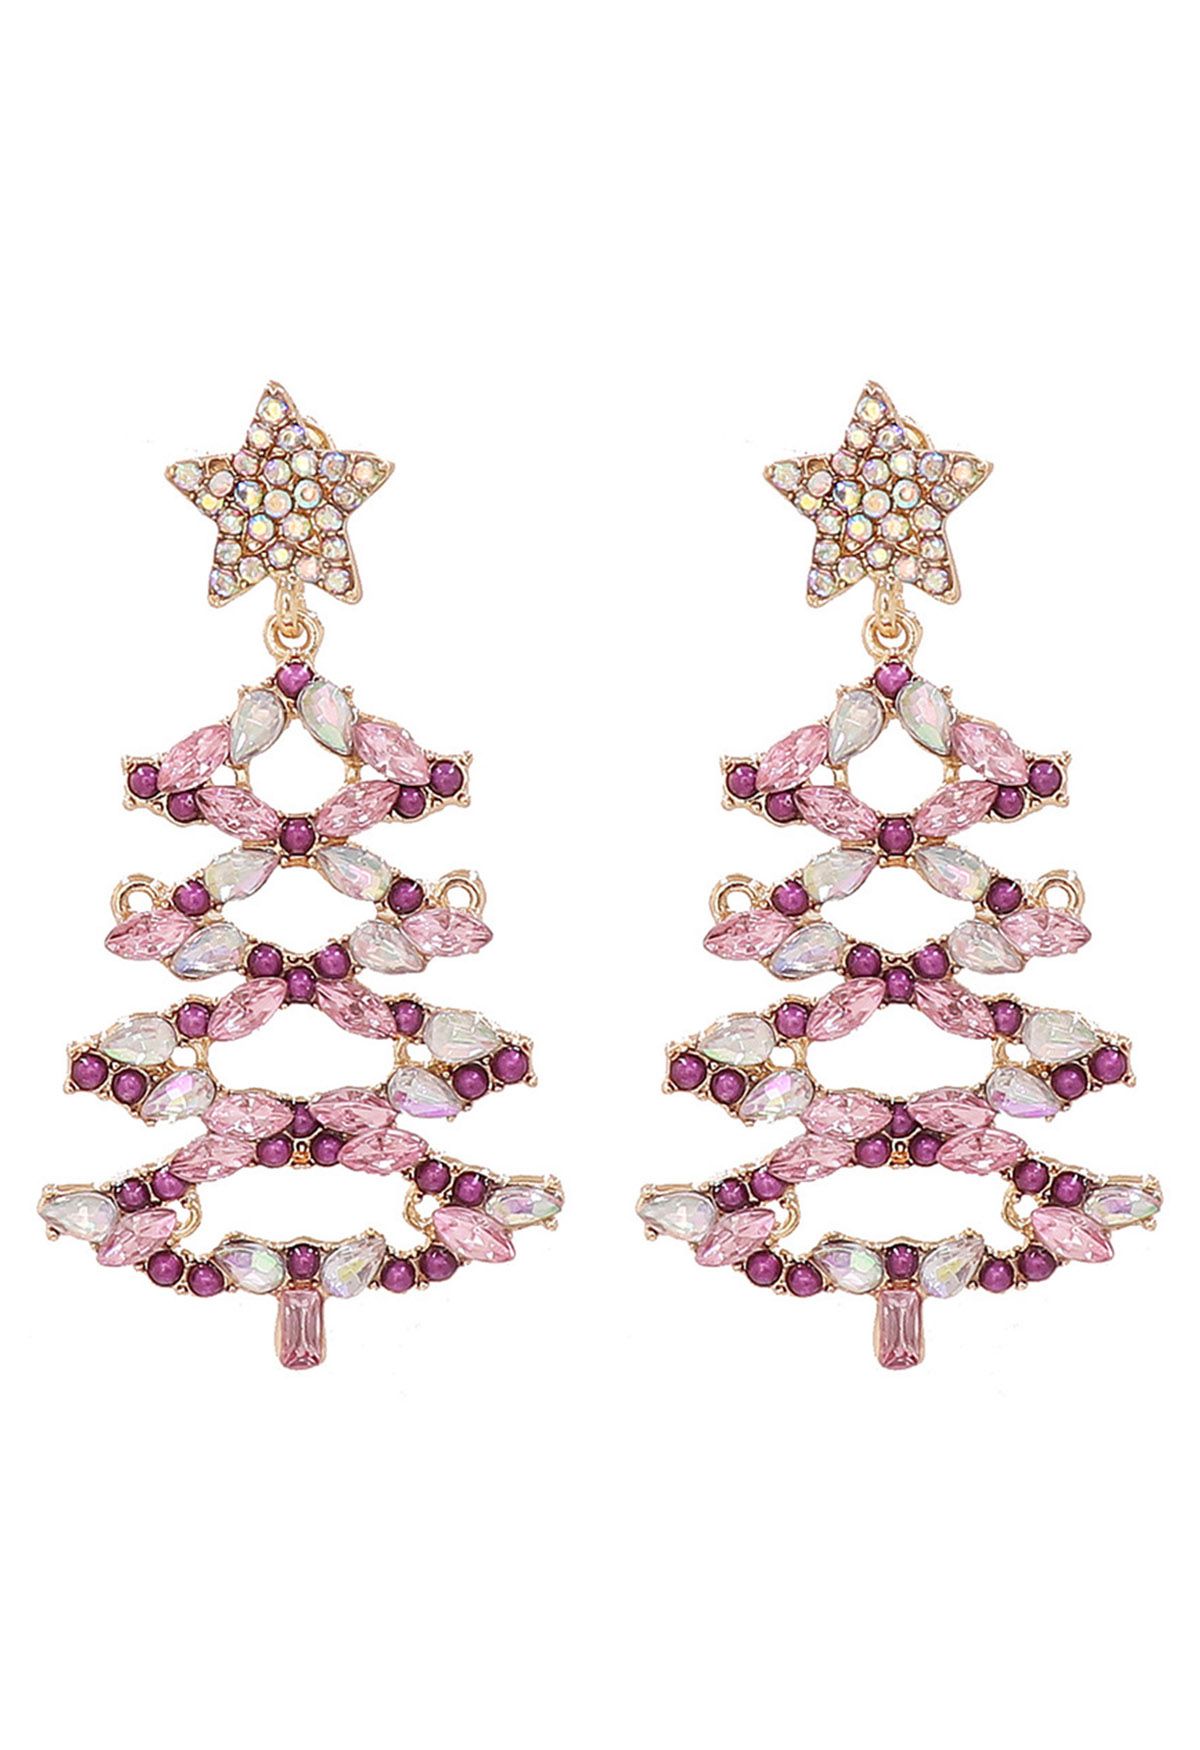 Ausgehöhlte Weihnachtsbaum-Ohrringe mit Strasssteinen in Rosa